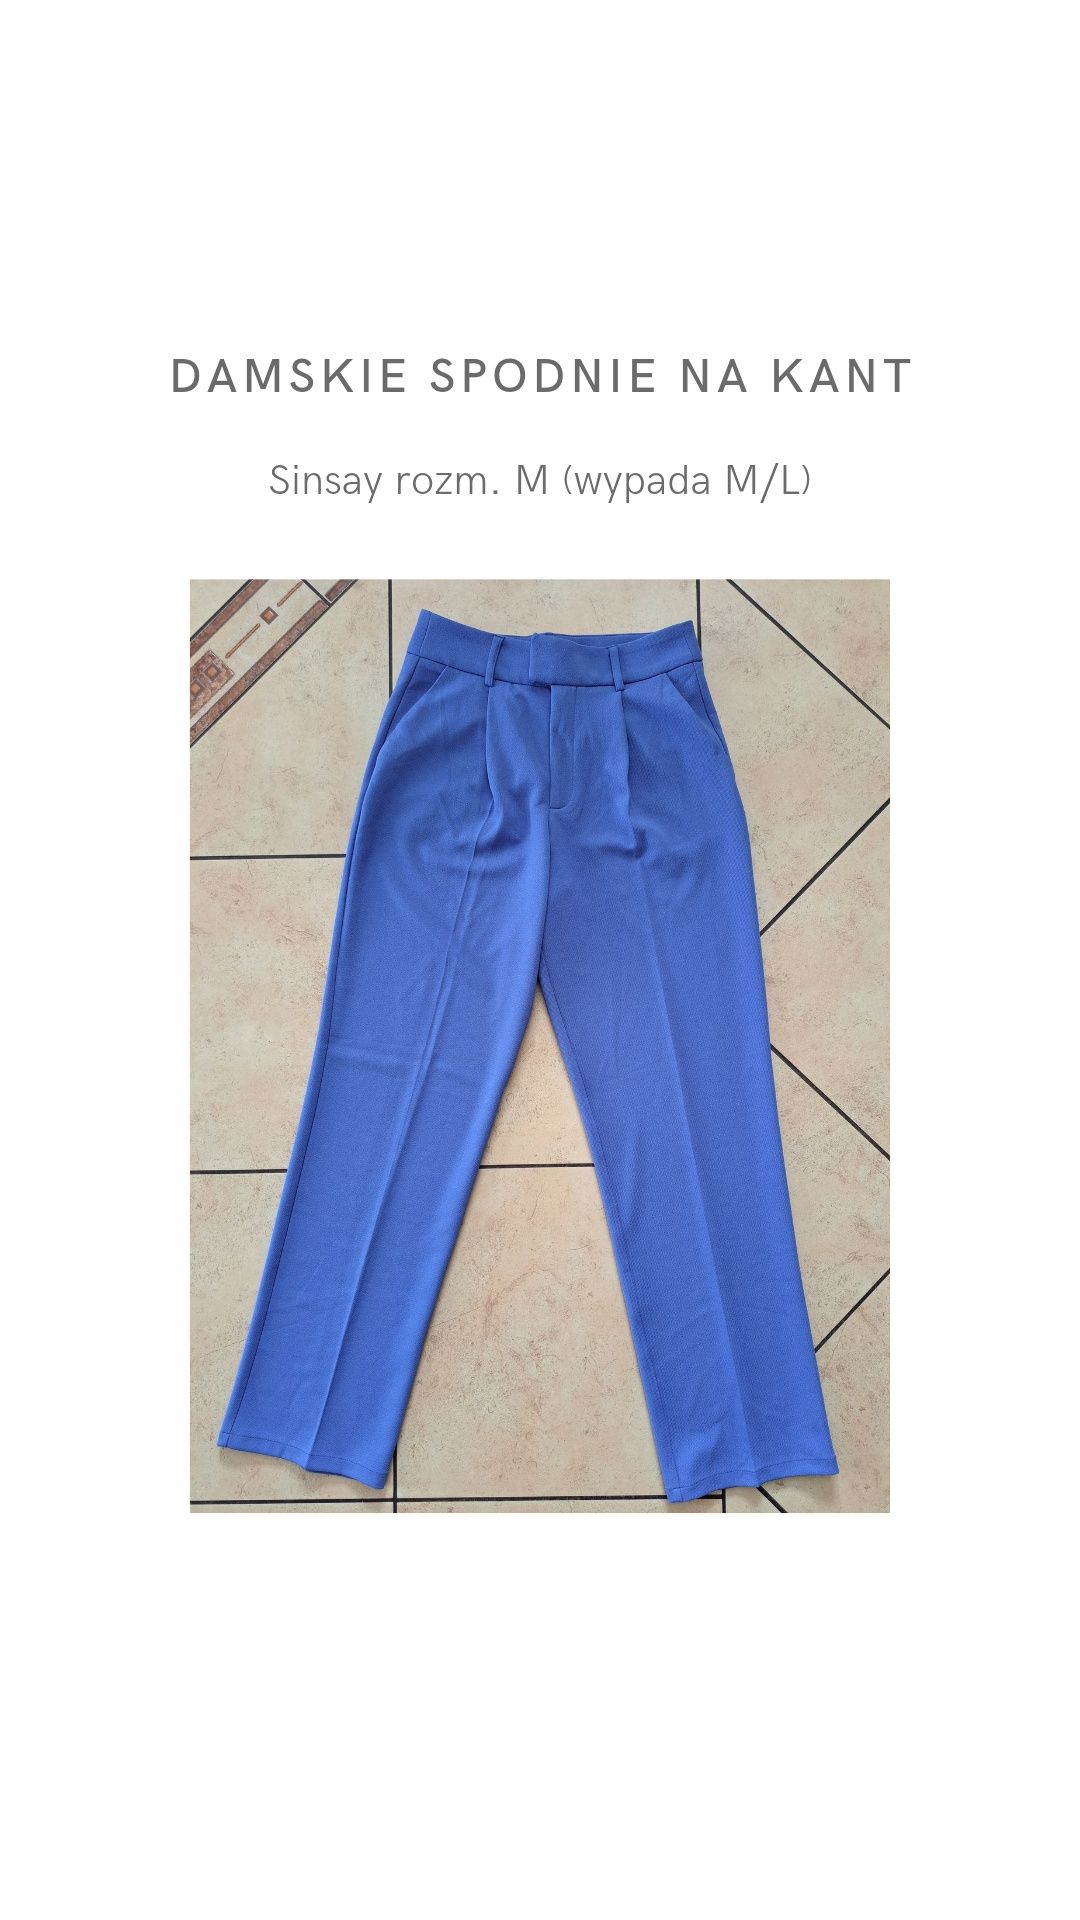 Damskie spodnie na kant Sinsay rozm. M (wypada M/L)